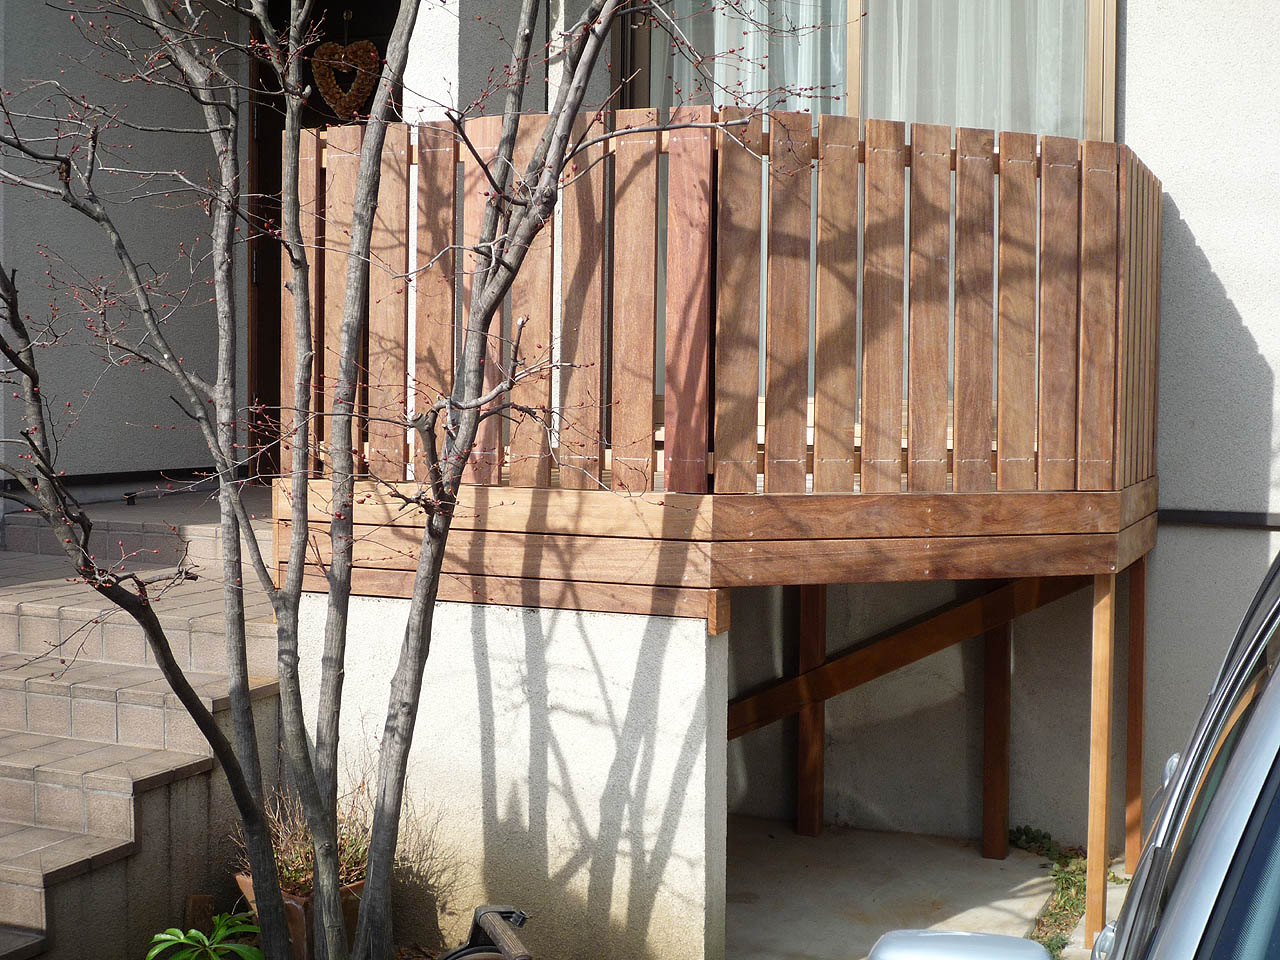 神奈川県横浜市青葉区 S邸 腐ったウッドデッキつくり替え 美しいイぺフェンスとデッキ上のミニ菜園